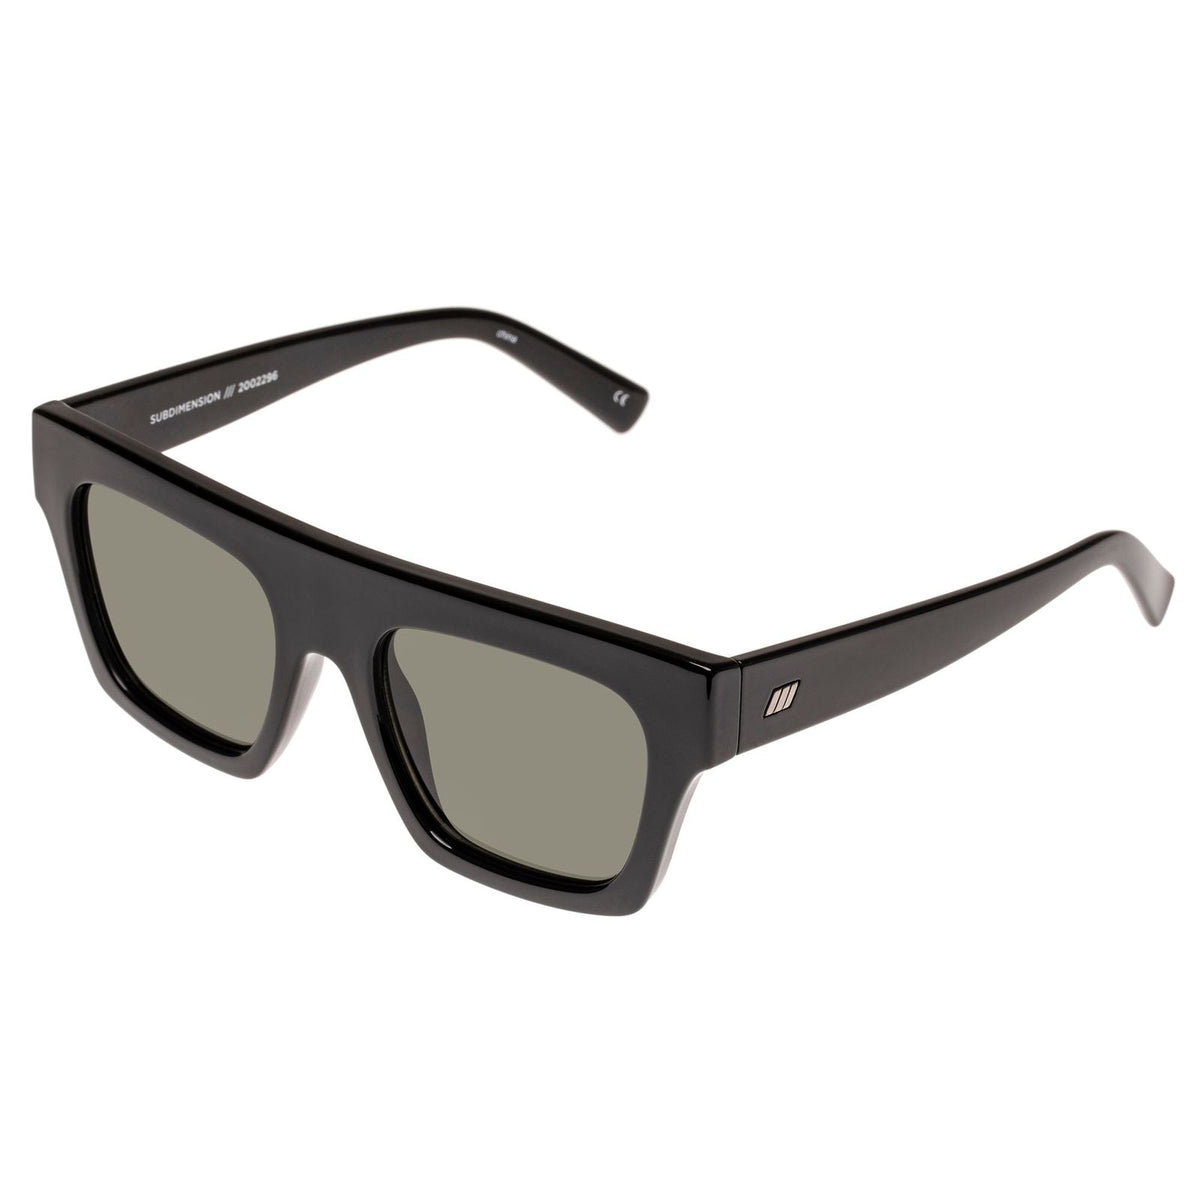 Le Specs - Subdimension - Black Sunglasses